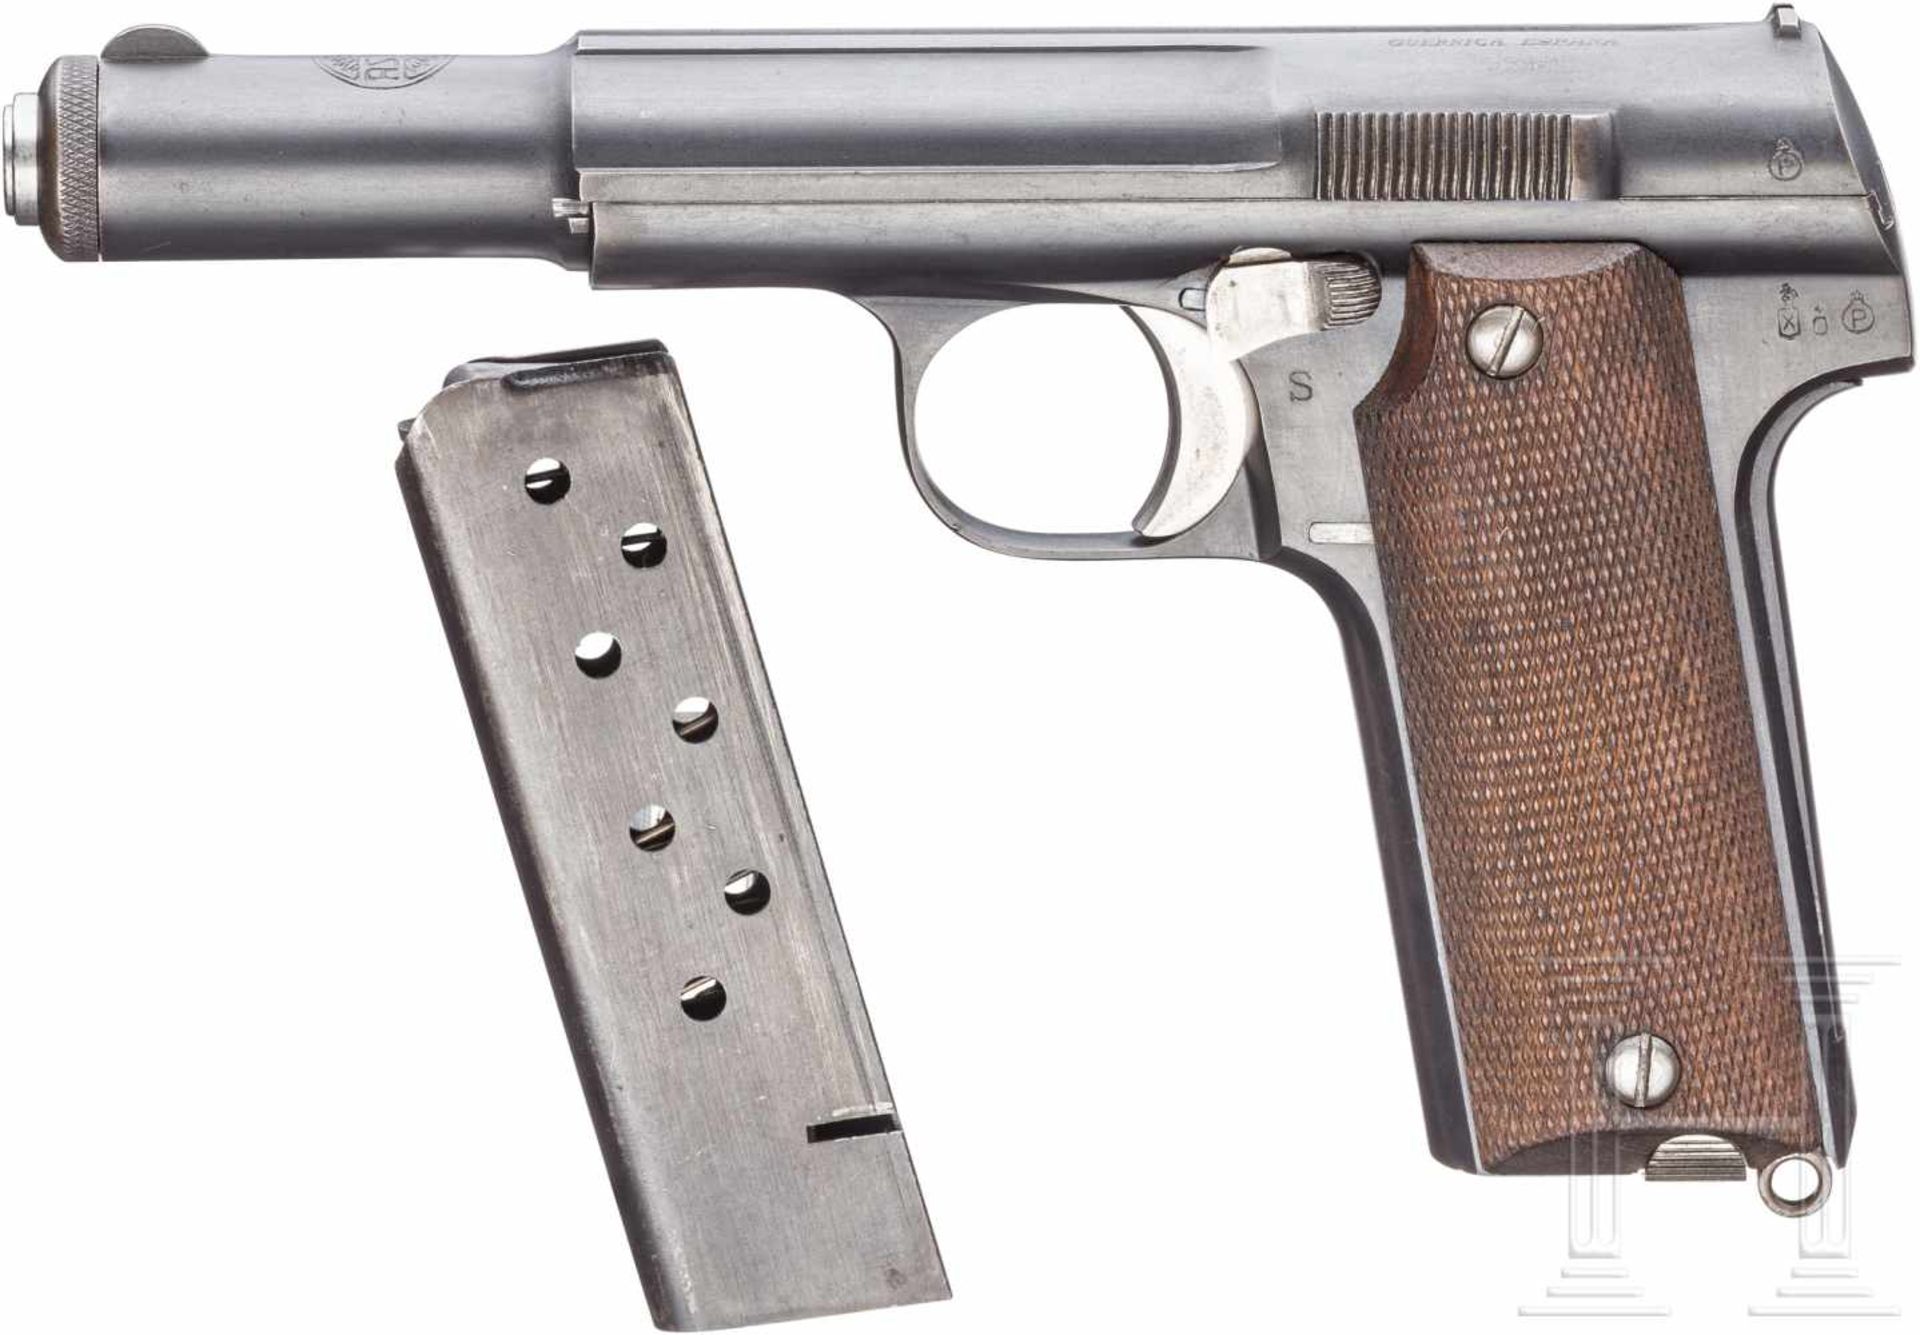 Astra Mod. 600/43Kal. 9 mm Luger, Nr. 9375, Verschluss S/N 8375, Lauf S/N 816, dieser blank.